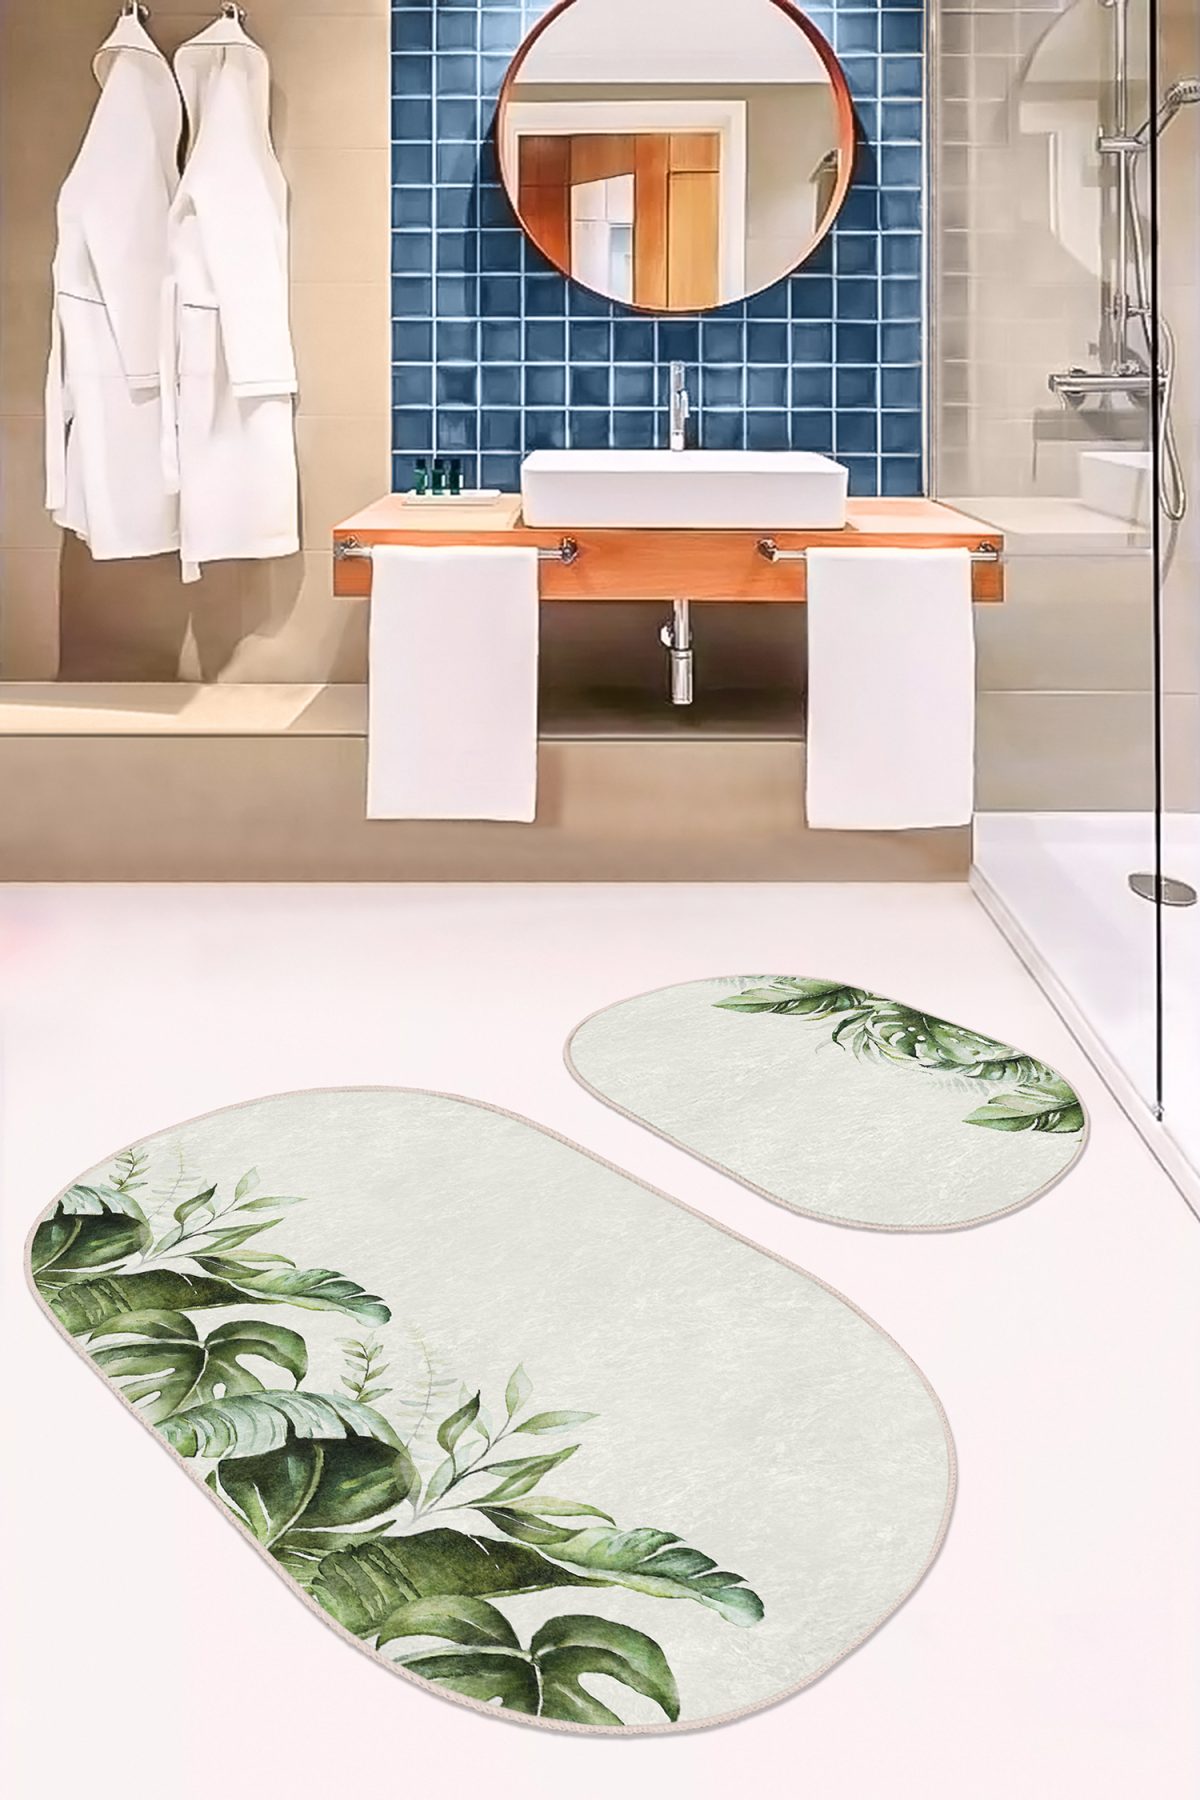 Krem Zeminli Yeşil Tropik Yapraklar Özel Tasarım 2'li Oval Kaymaz Tabanlı Banyo & Mutfak Paspas Takımı Realhomes